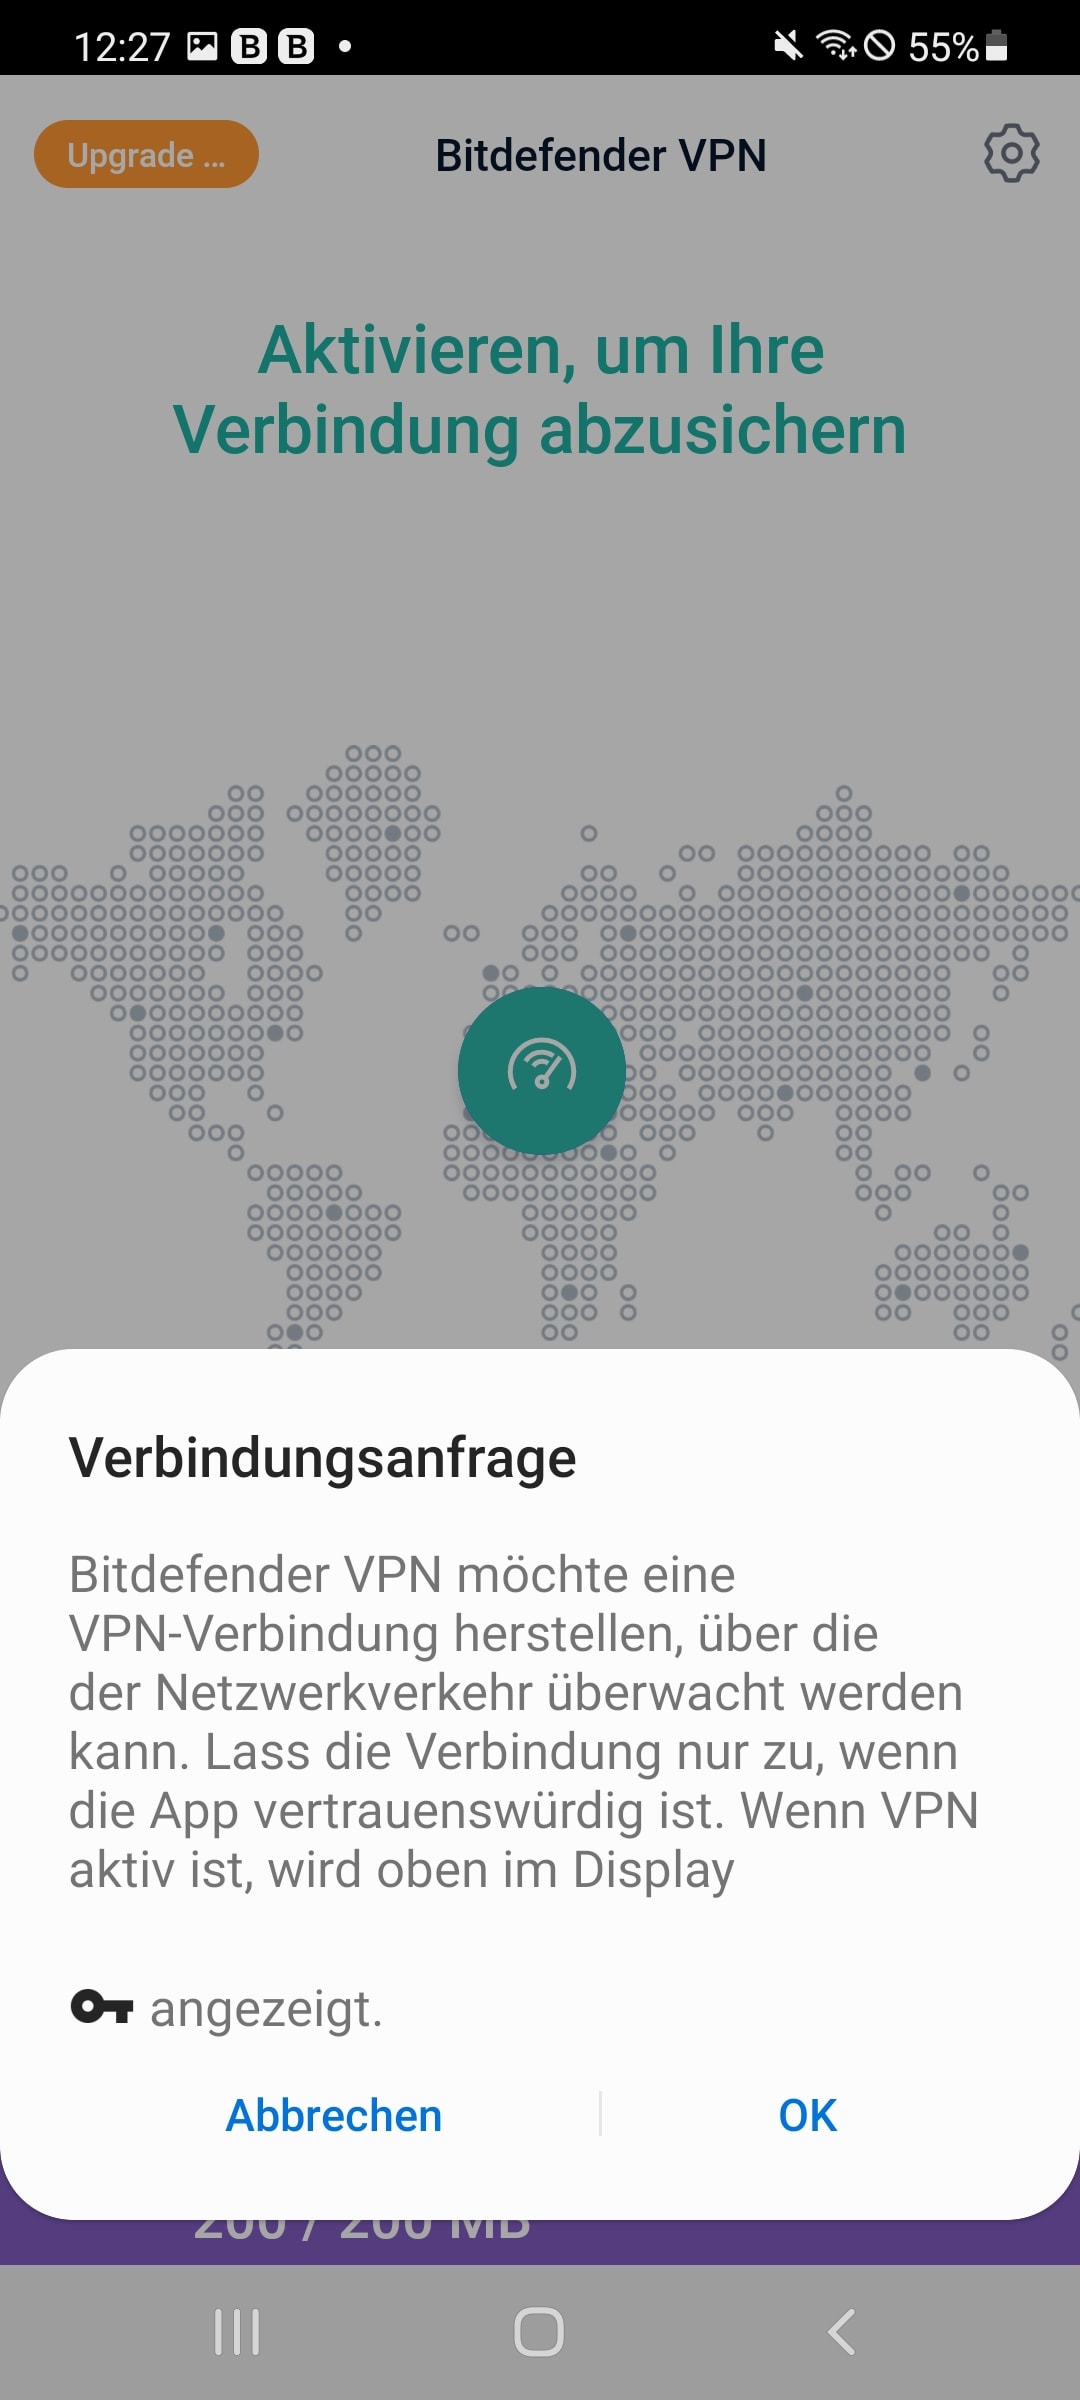 Bei der ersten Einrichtung benötigt die Verbindung über den VPN-Server eine Erlaubnis, die bestätigt werden sollte.